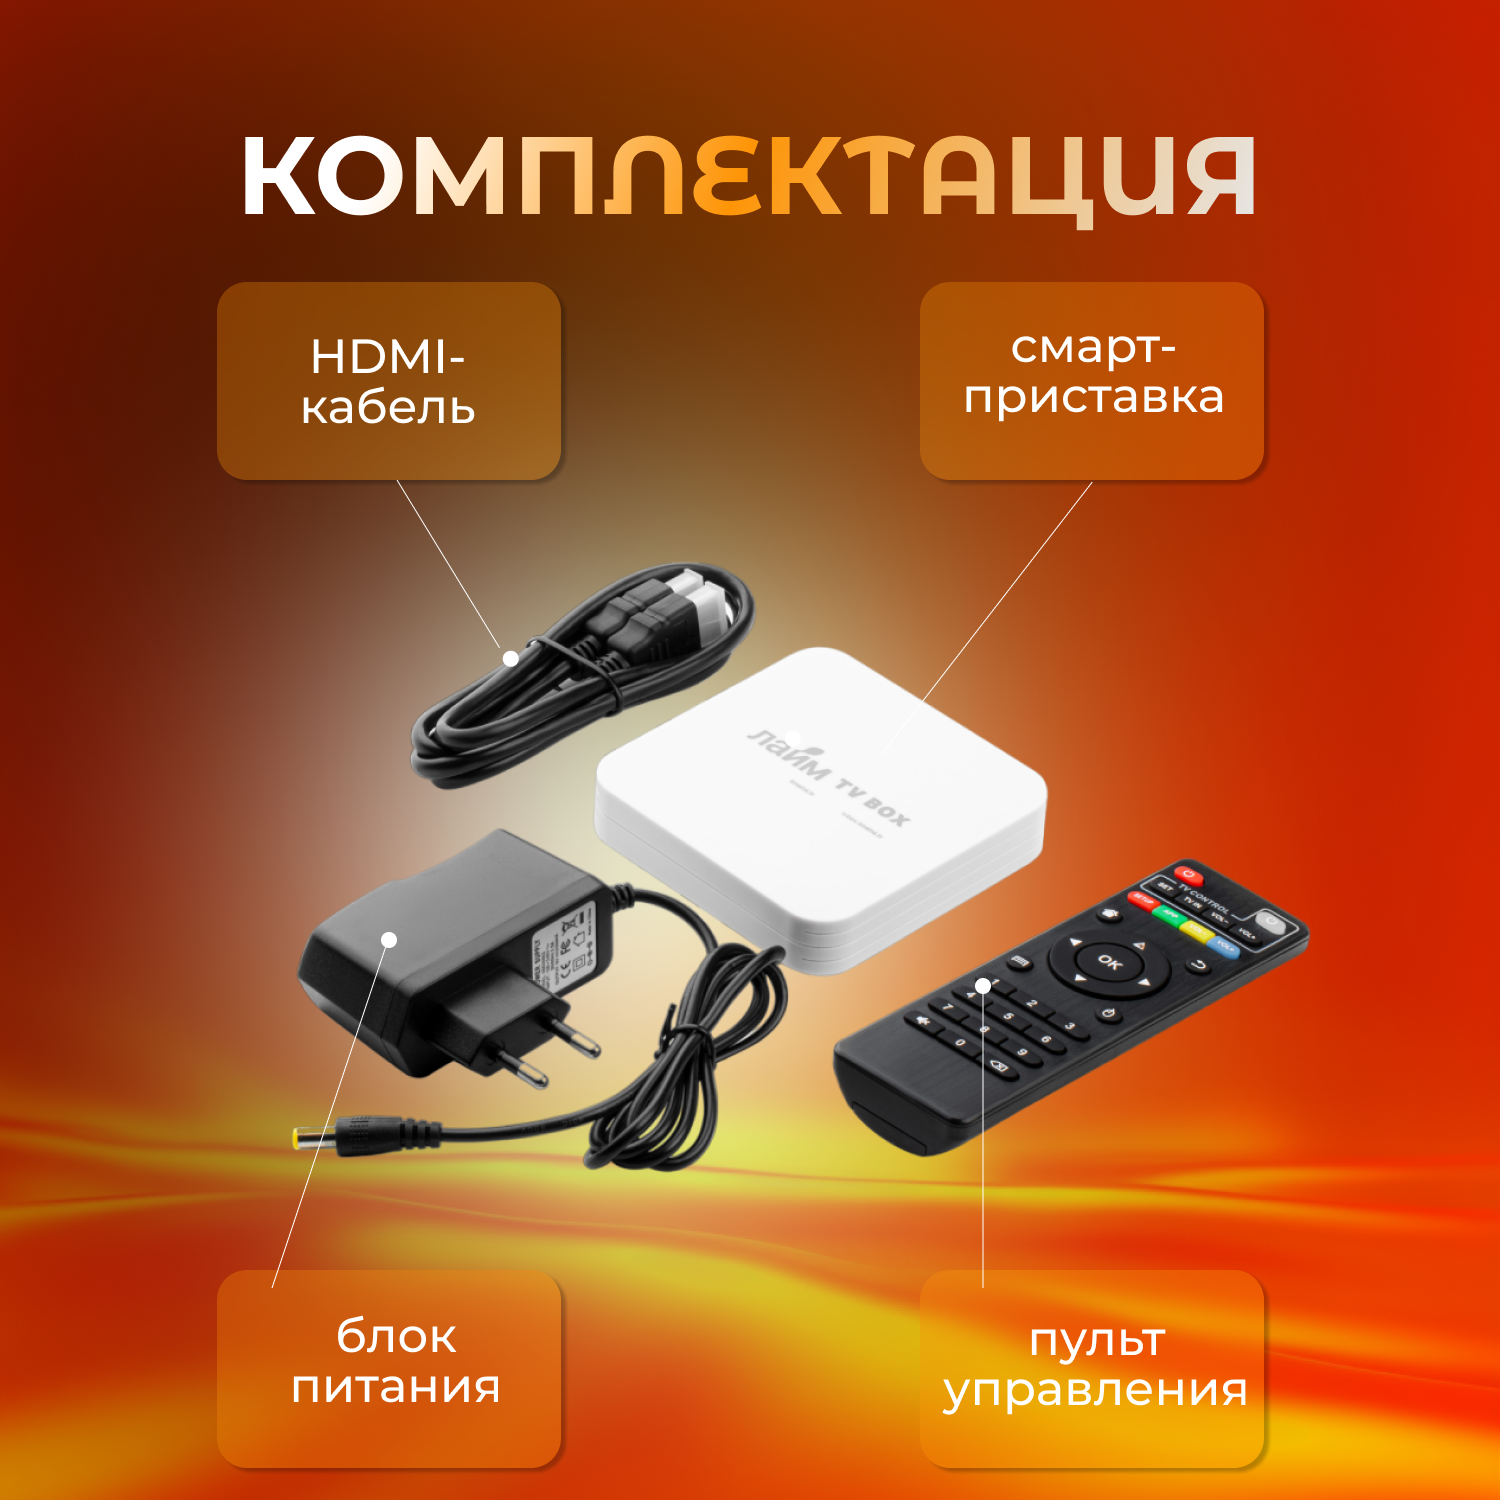 Лайм TV Box T95 MINI 2/16Гб / Андроид ТВ приставка c WI FI/ 4К / Смарт ТВ / Медиаплеер/ + 300 ТВ-каналов бесплатно /приставка для цифрового тв